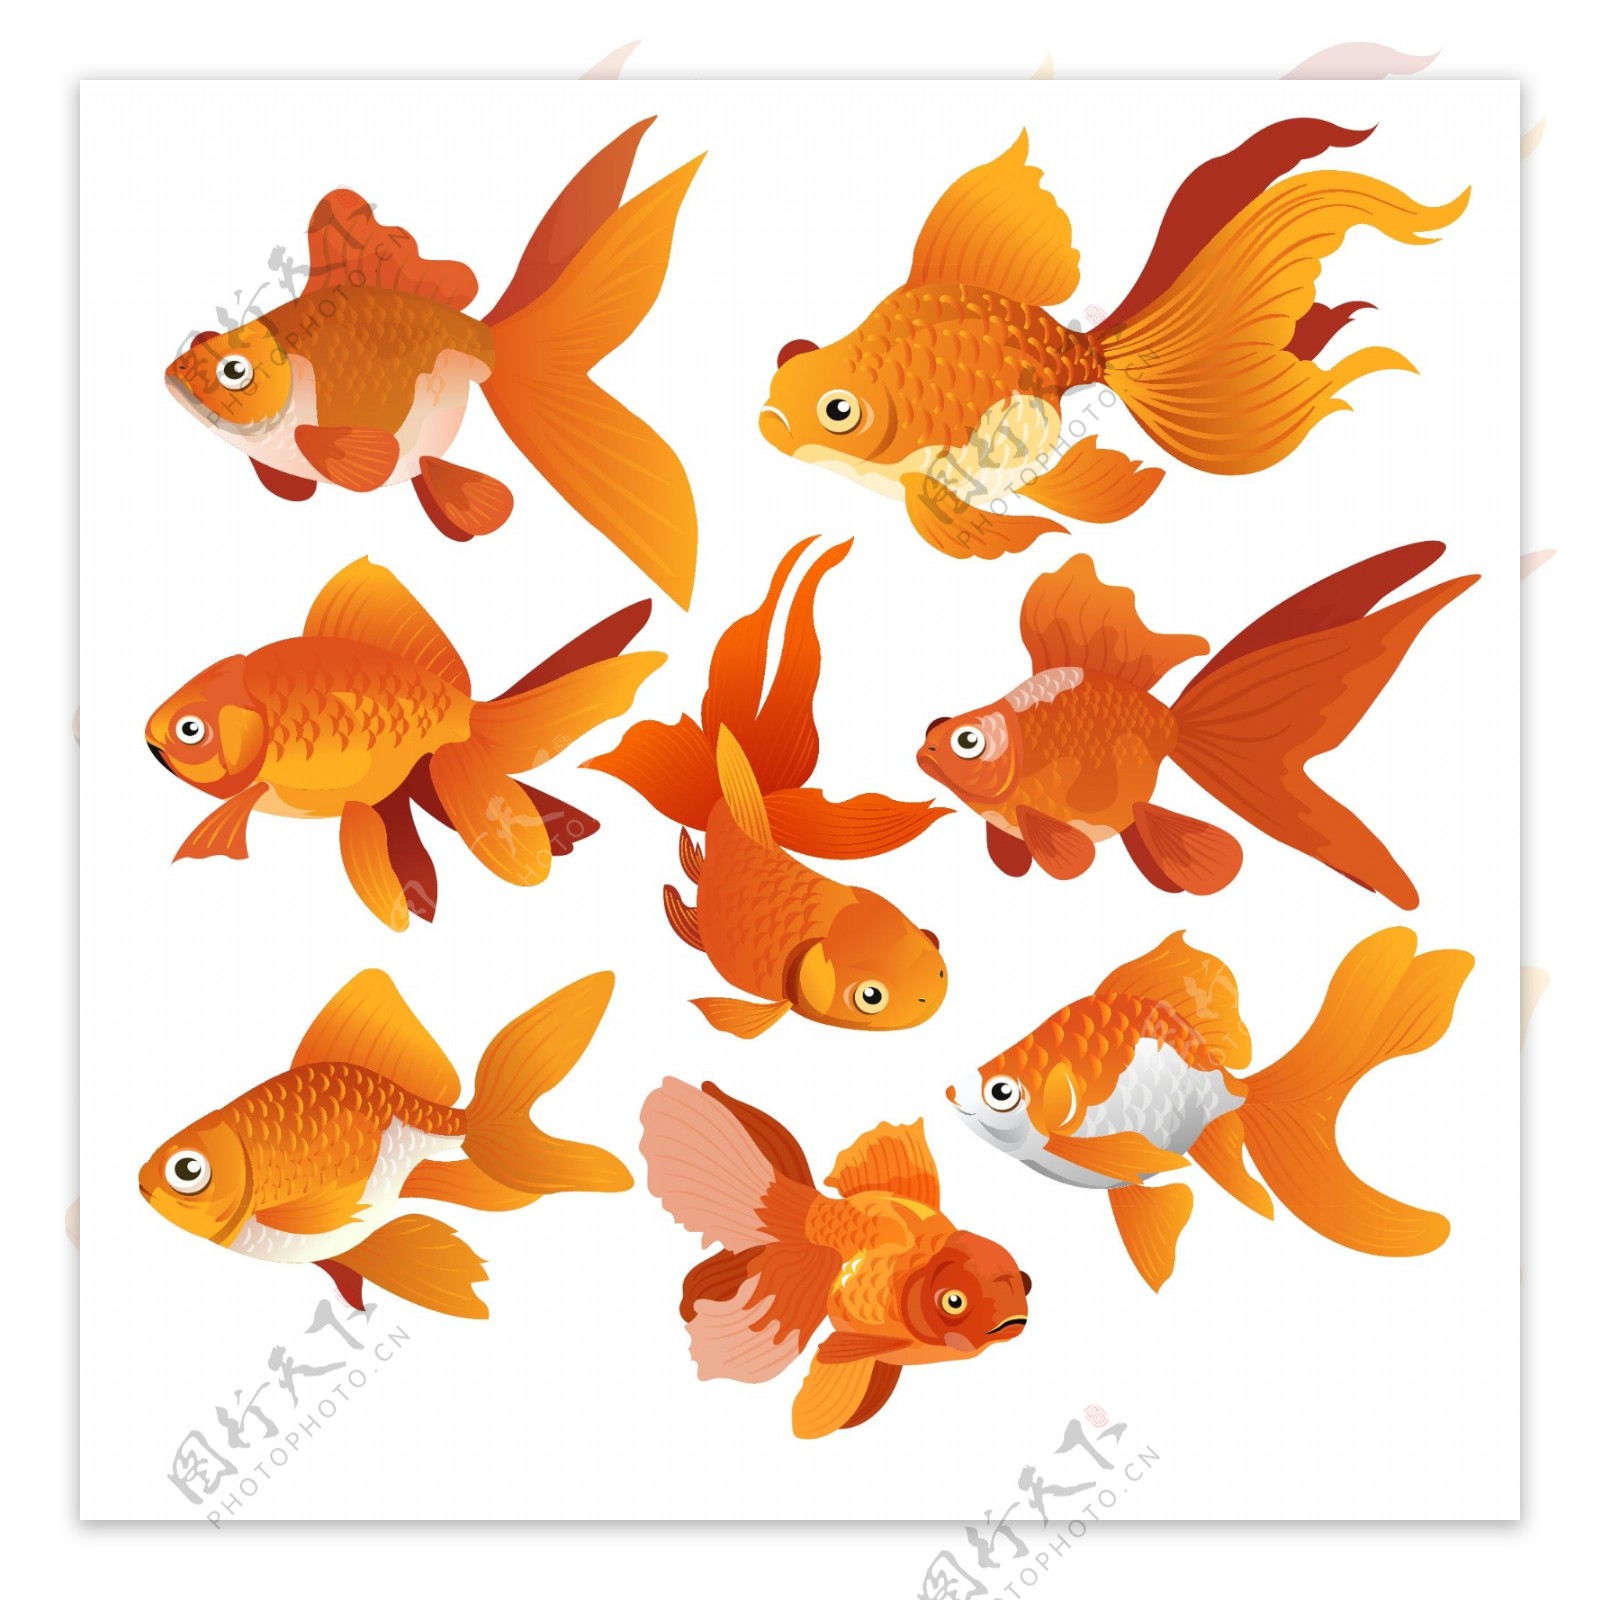 8款橙色金鱼设计矢量素材